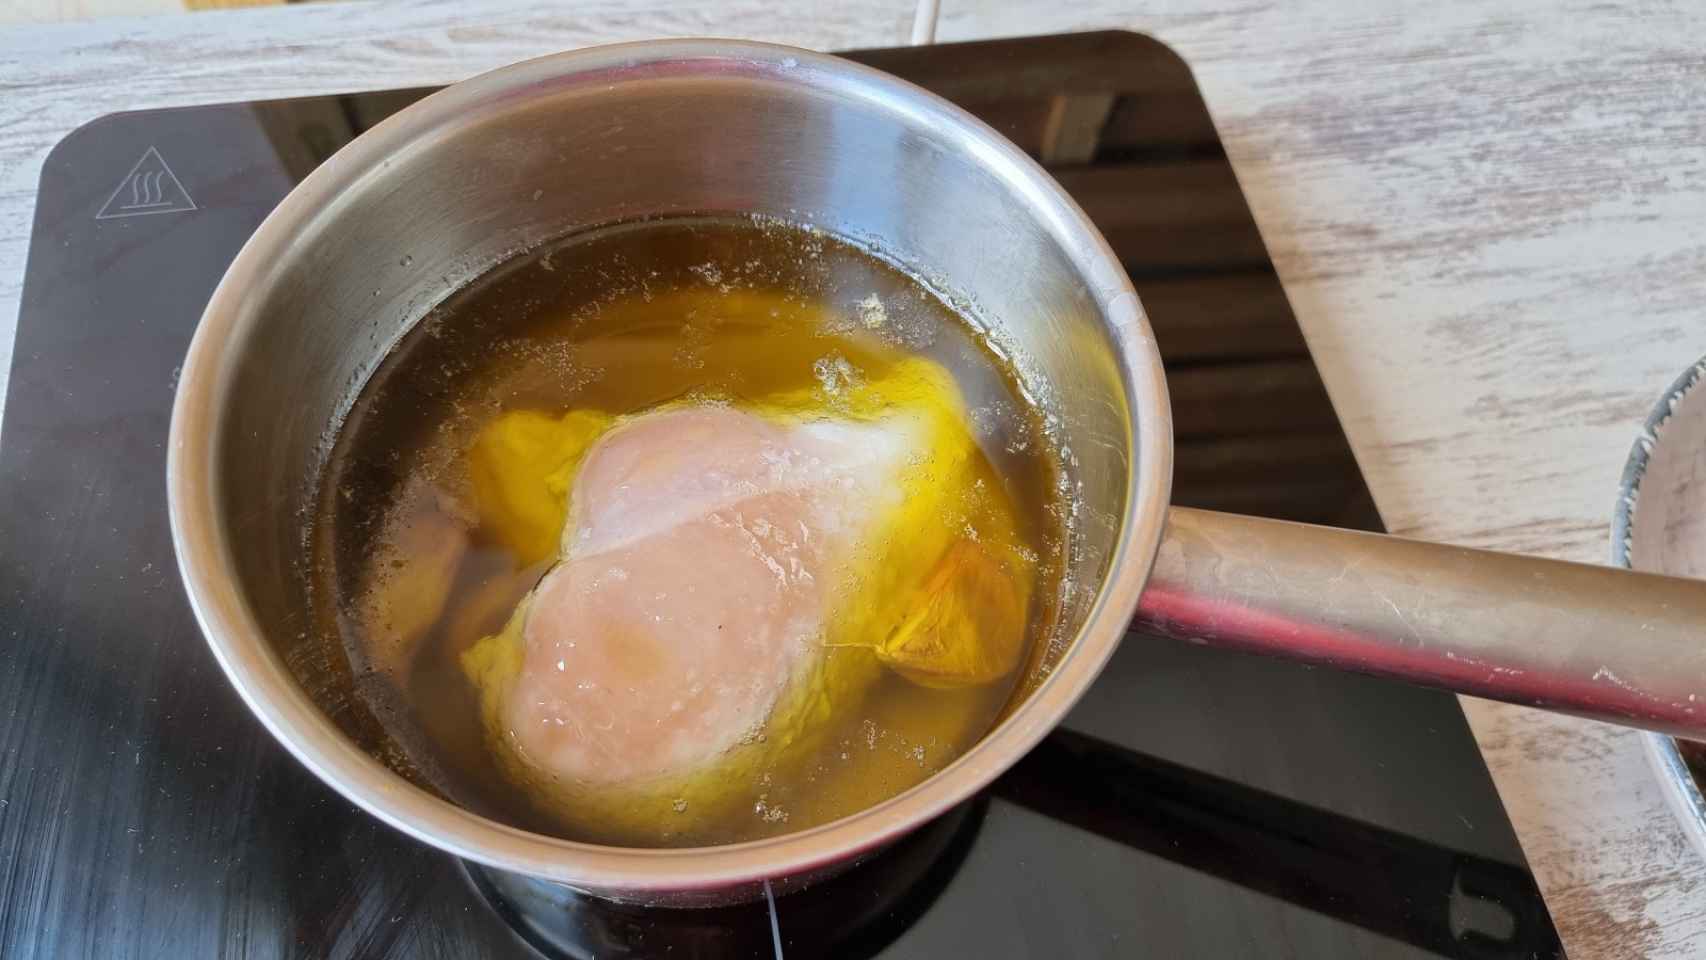 Ensalada de pollo confitado y sandía asada, una receta sorprendente